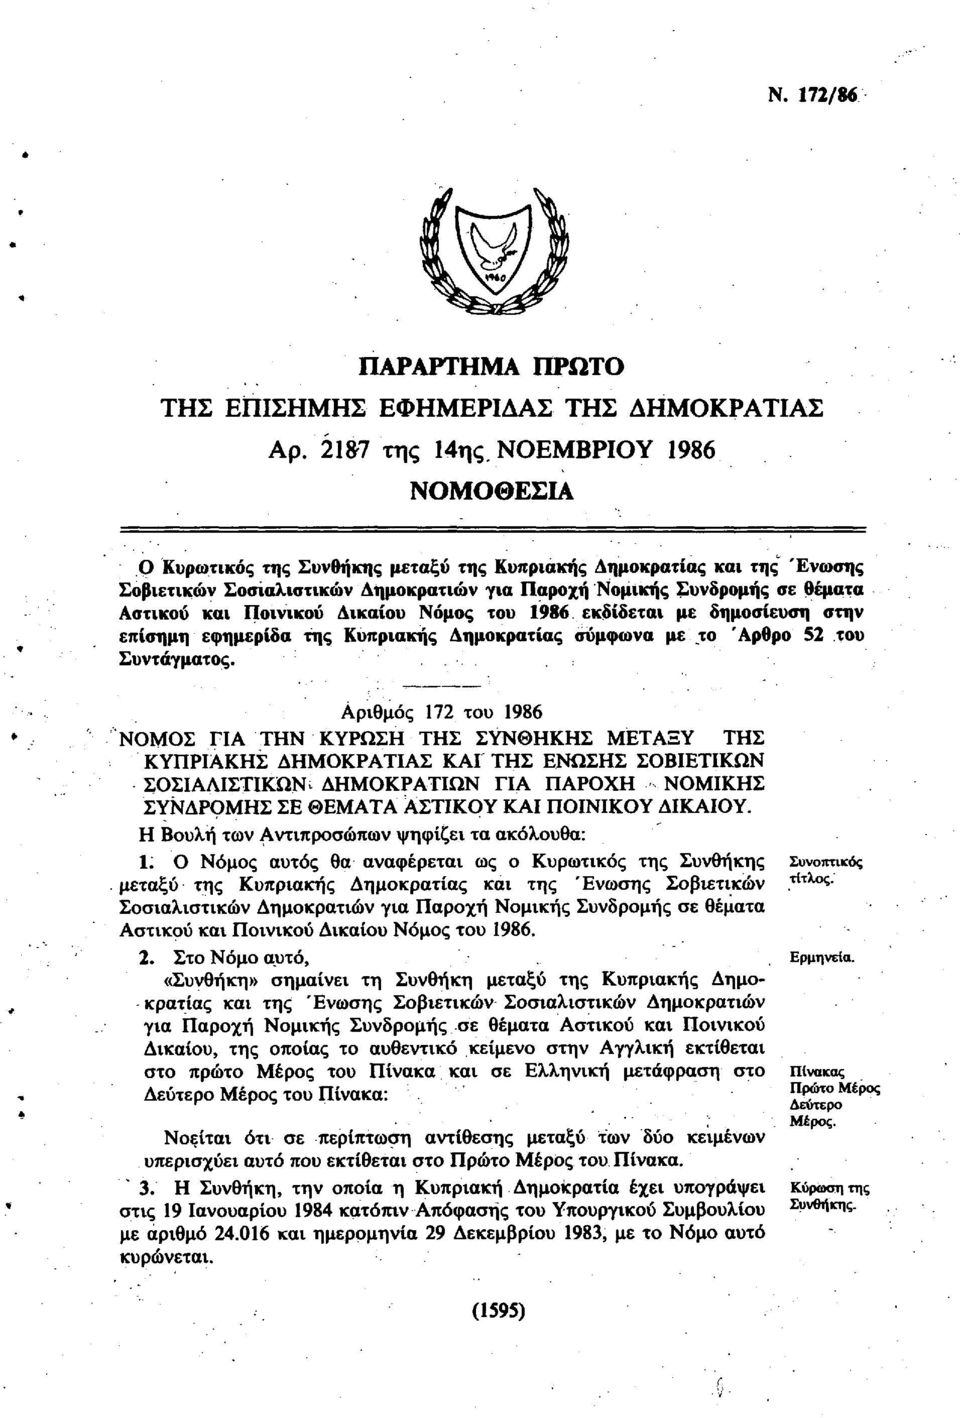 Δικαίου Νόμος του 1986. εκδίδεται με δημοσίευση στην επίσημη εφημερίδα της Κυπριακής Δημοκρατίας σύμφωνα με το Άρθρο 52 του Συντάγματος.